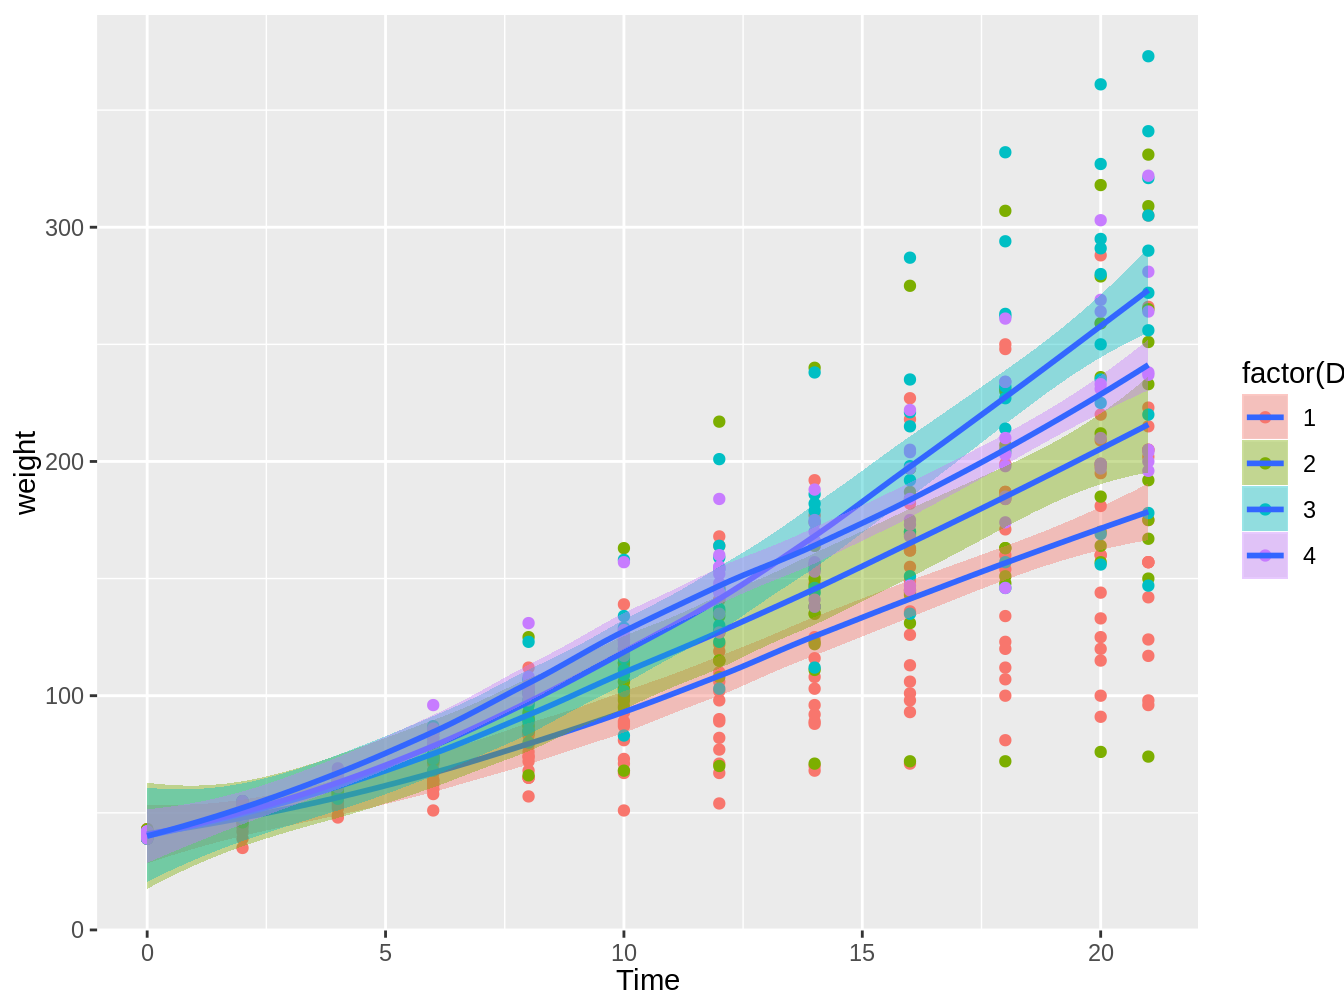 Gráfico en el cual vemos el peso de pollos en el tiempo, con colores distintos según el tipo de dieta, con líneas de tendencia e intervalos de confianza basados en el método loess